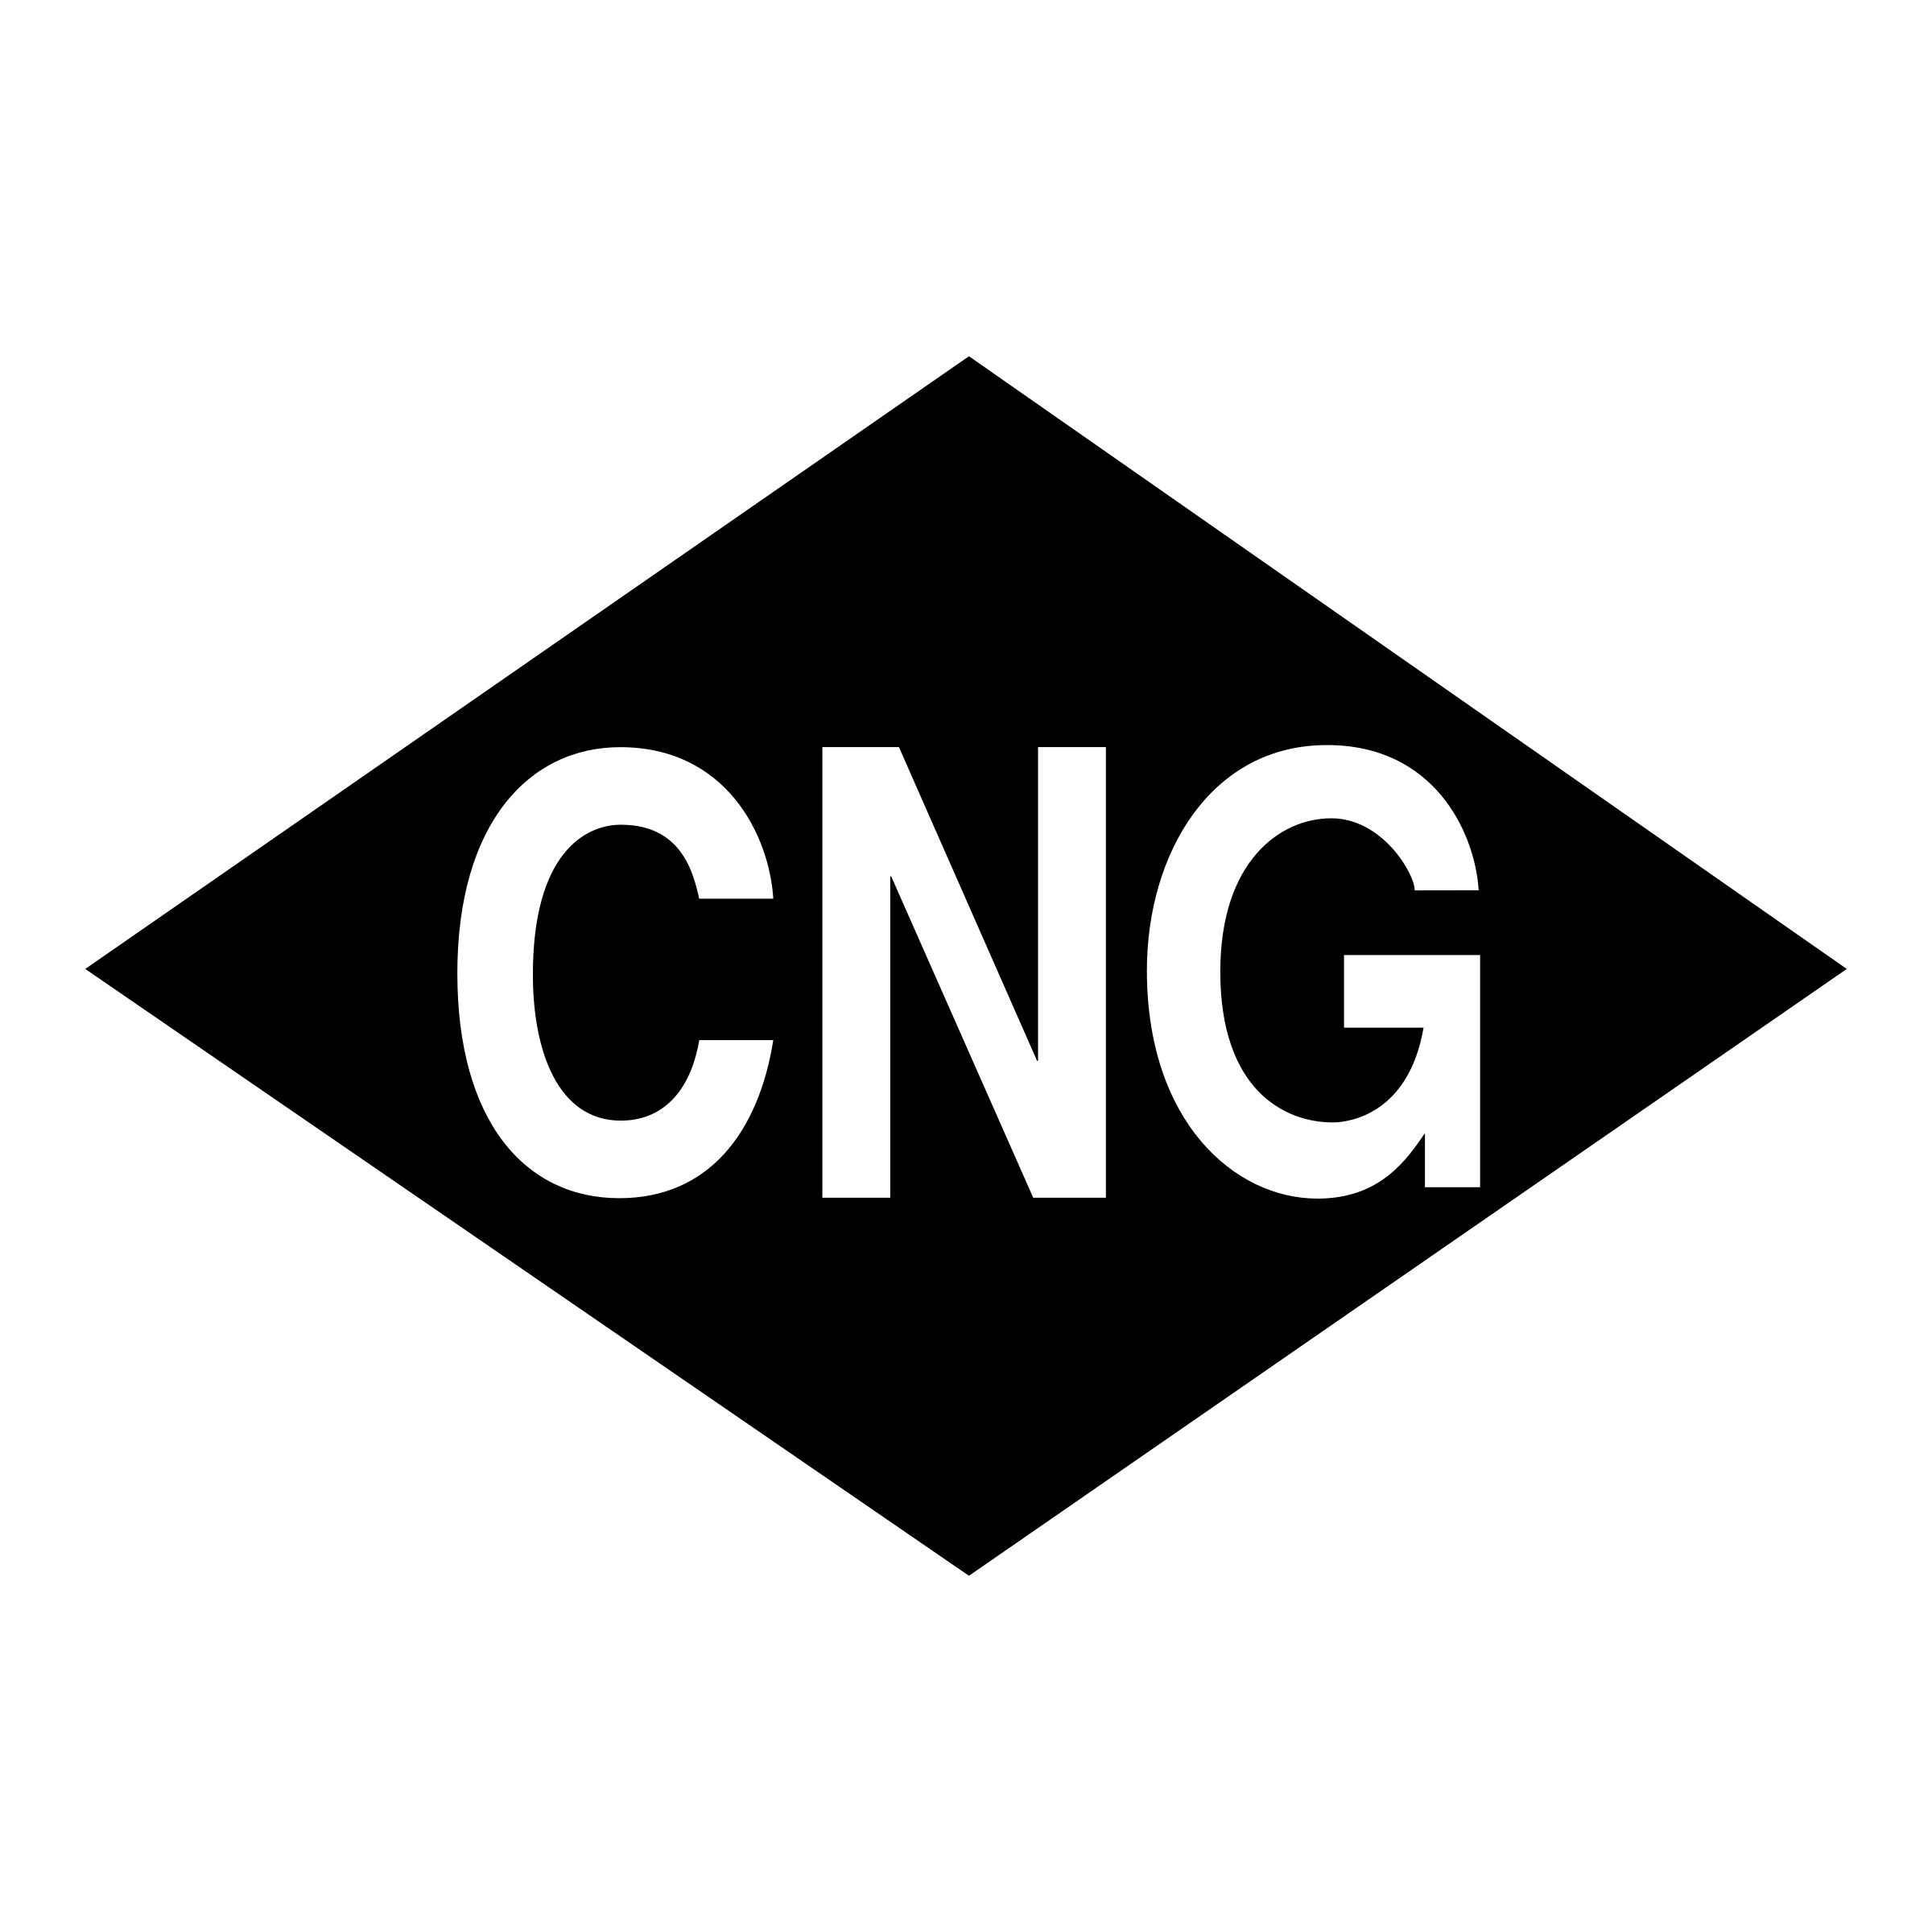 CNG Logo PNG Free Download